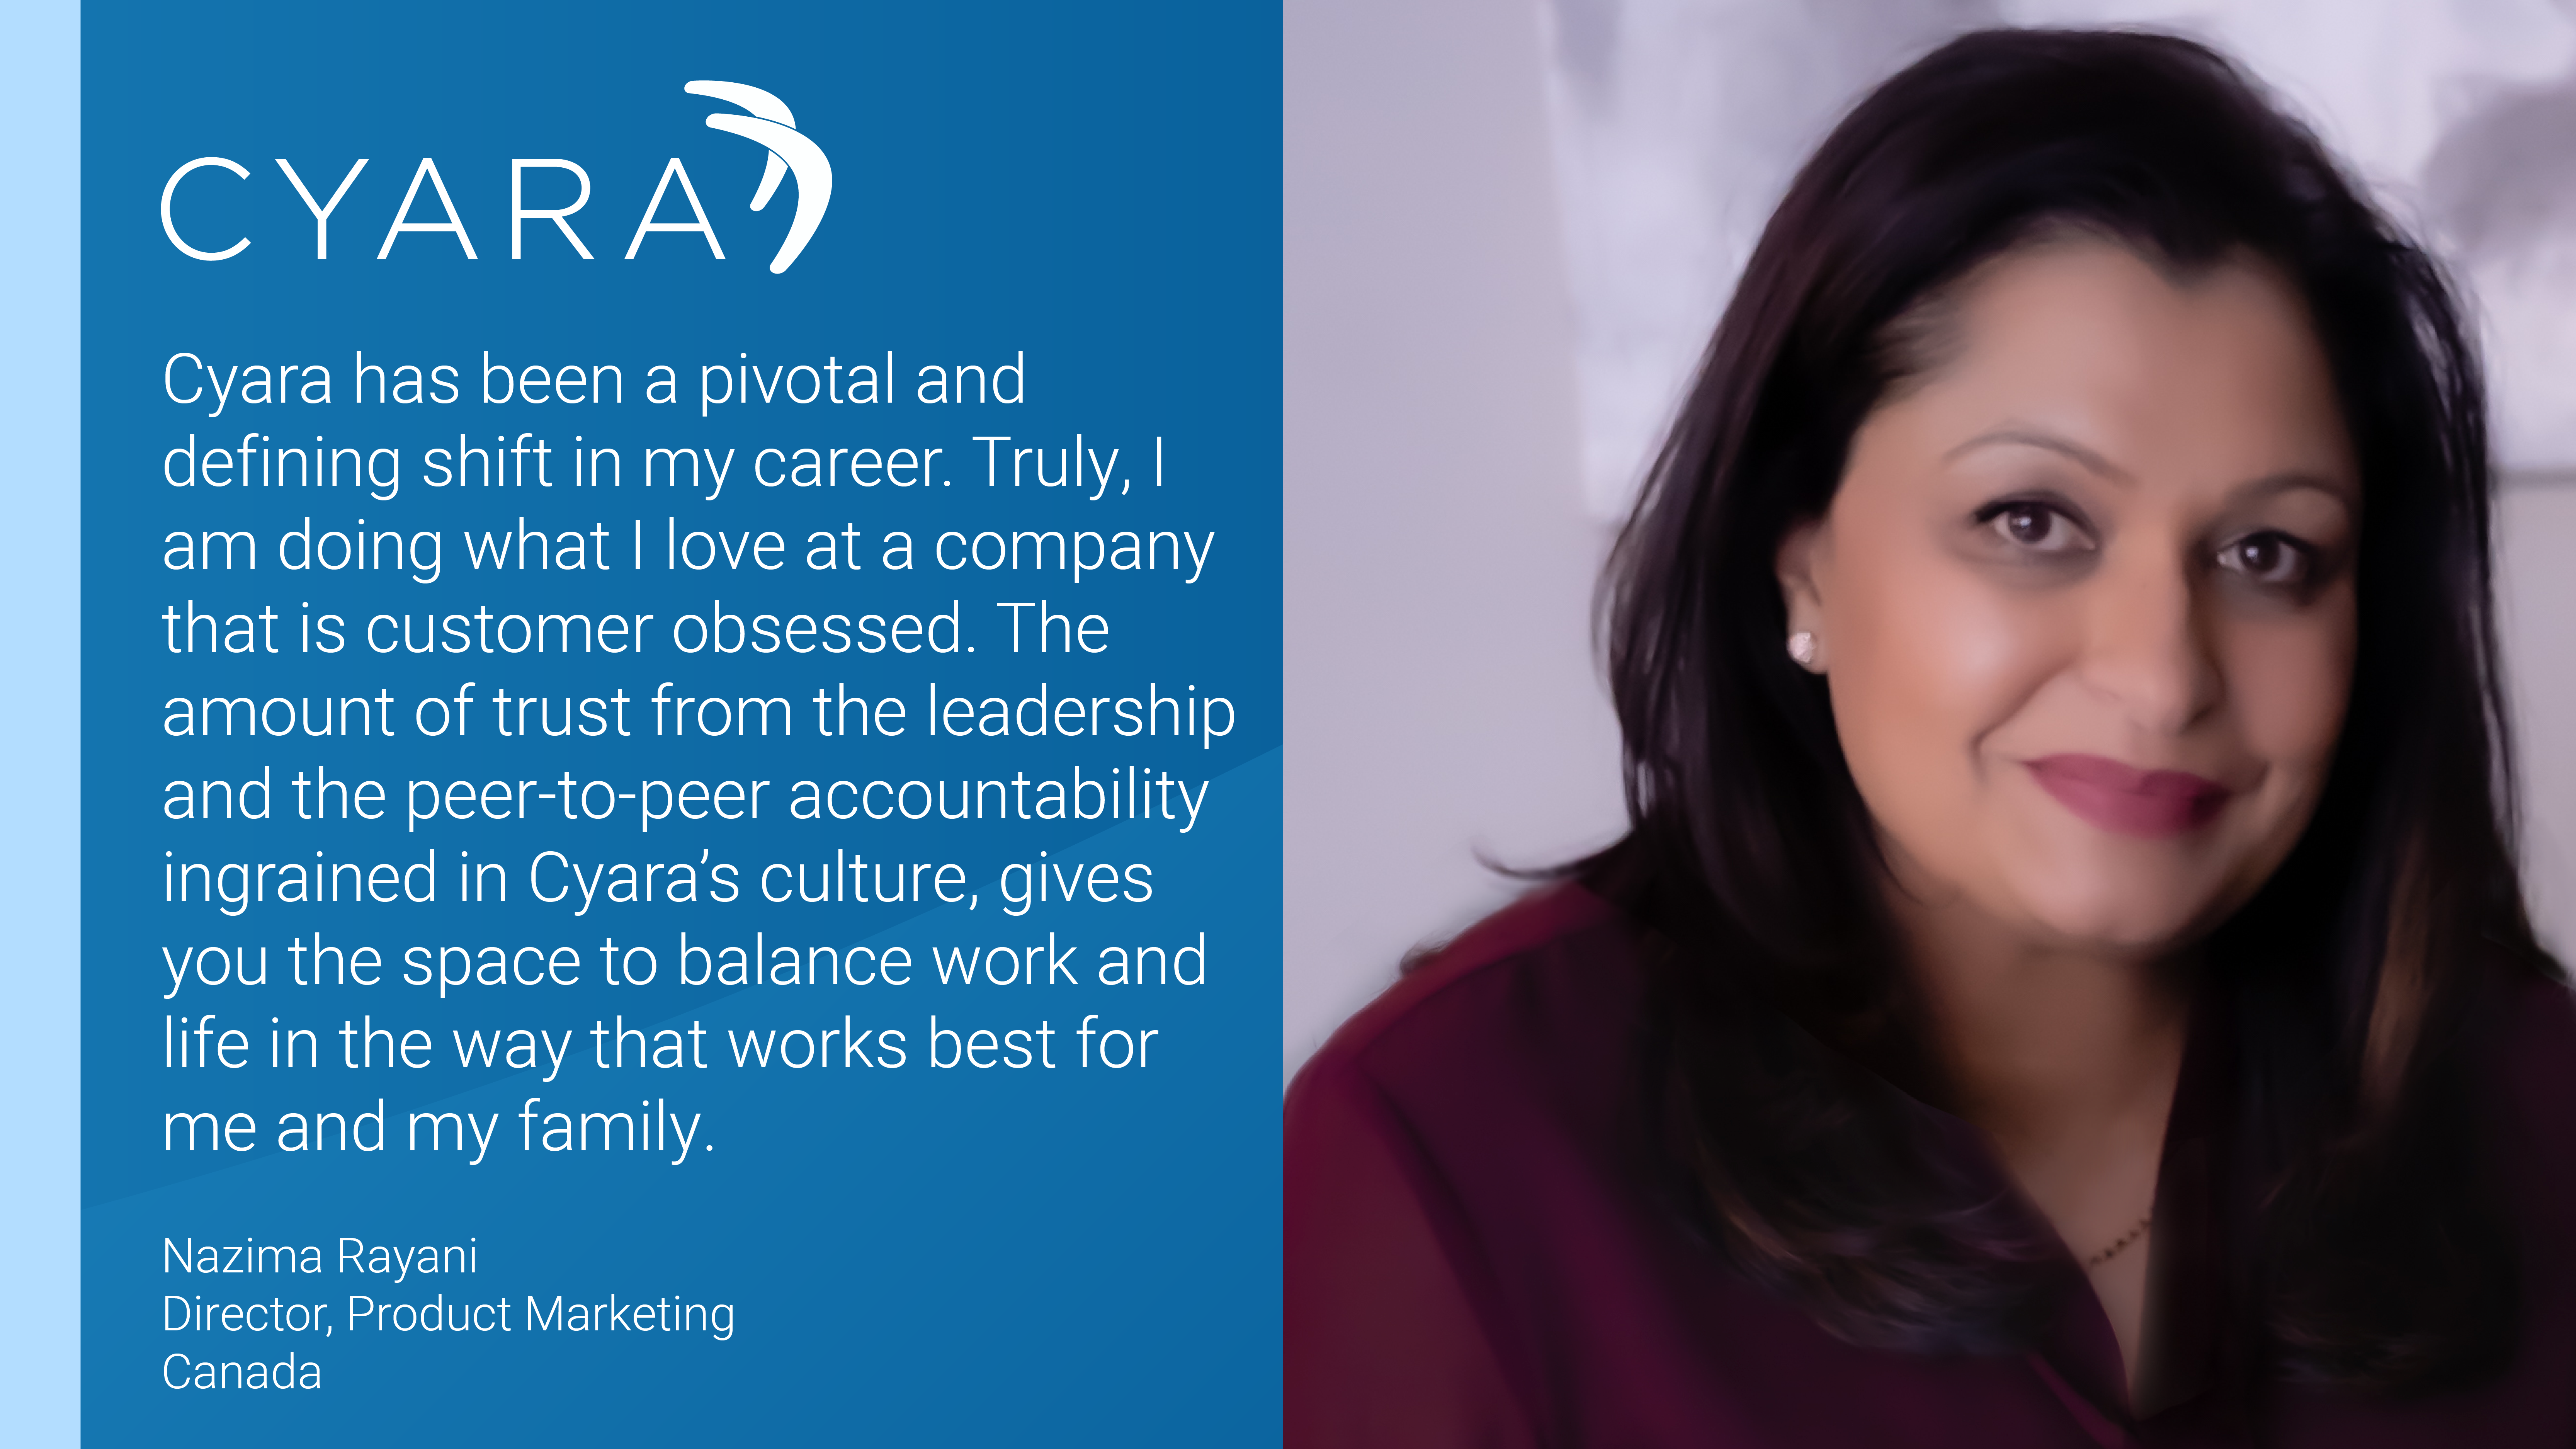 Cyara Employee Profile of Nazima Rayani with tagline